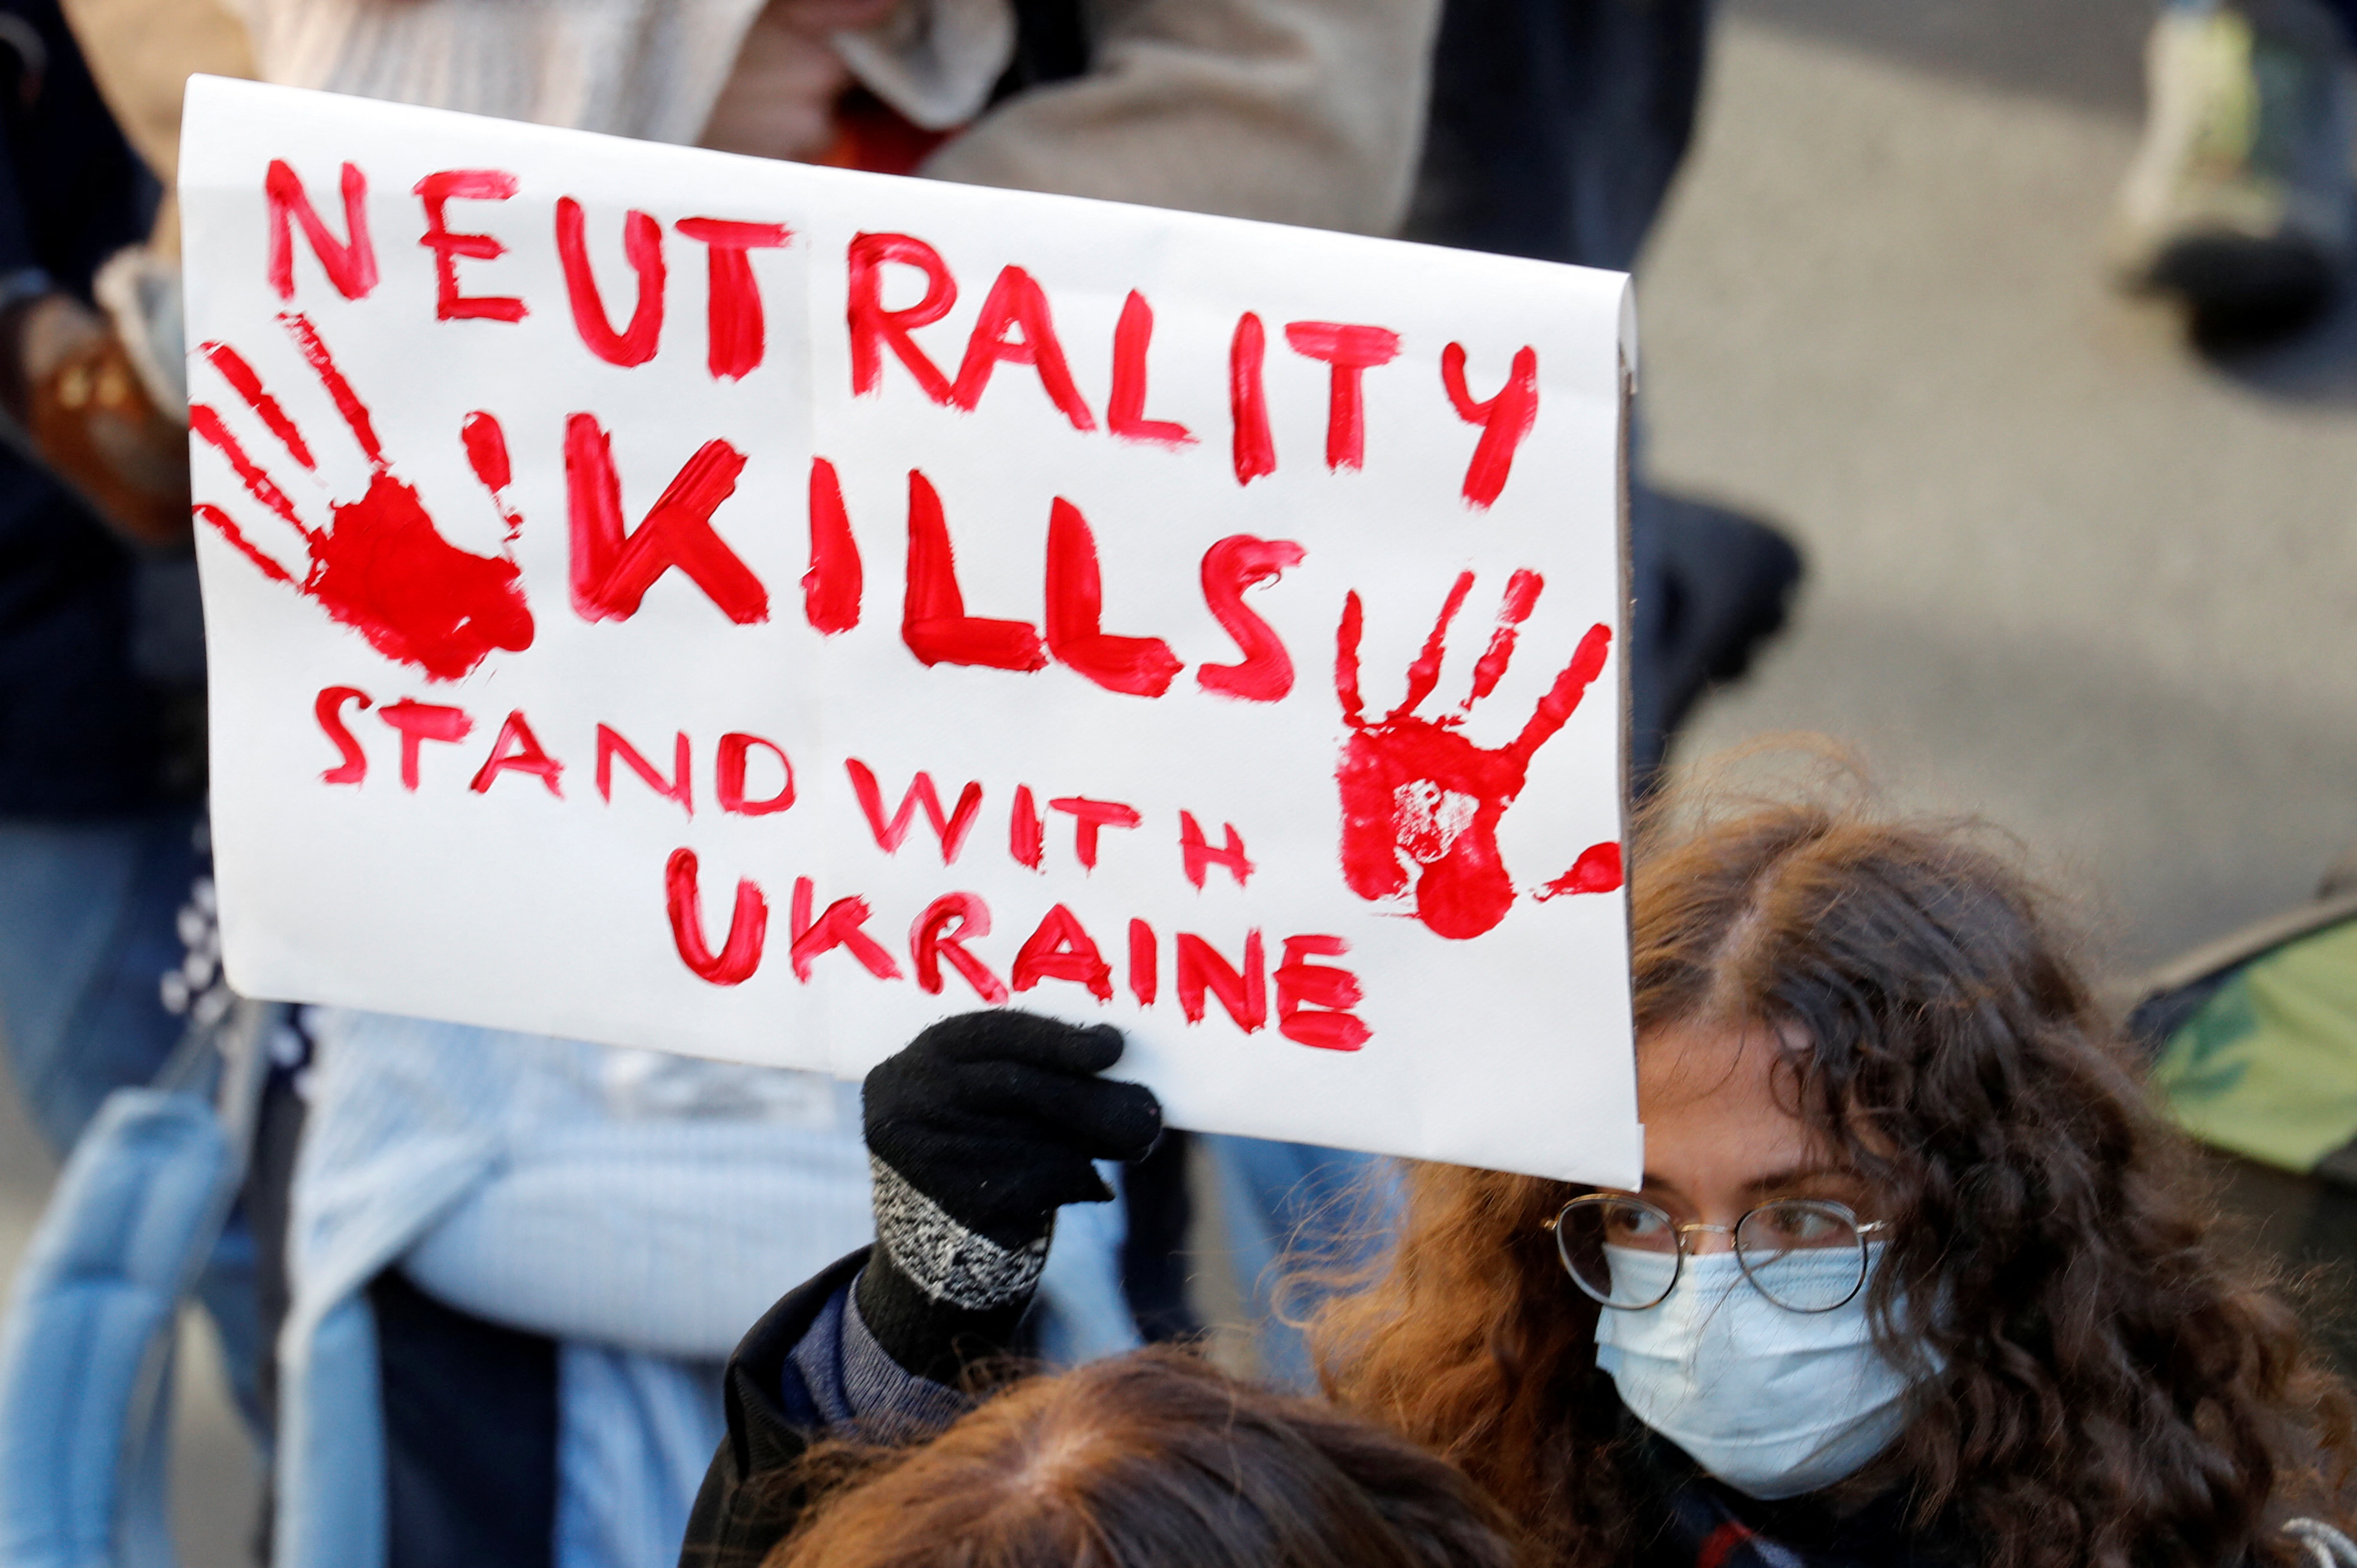 Un manifestante sostiene un cartel durante una protesta contra la guerra, después de que Rusia lanzara una operación militar masiva contra Ucrania, en Berna, Suiza, el 26 de febrero de 2022. REUTERS/Arnd Wiegmann